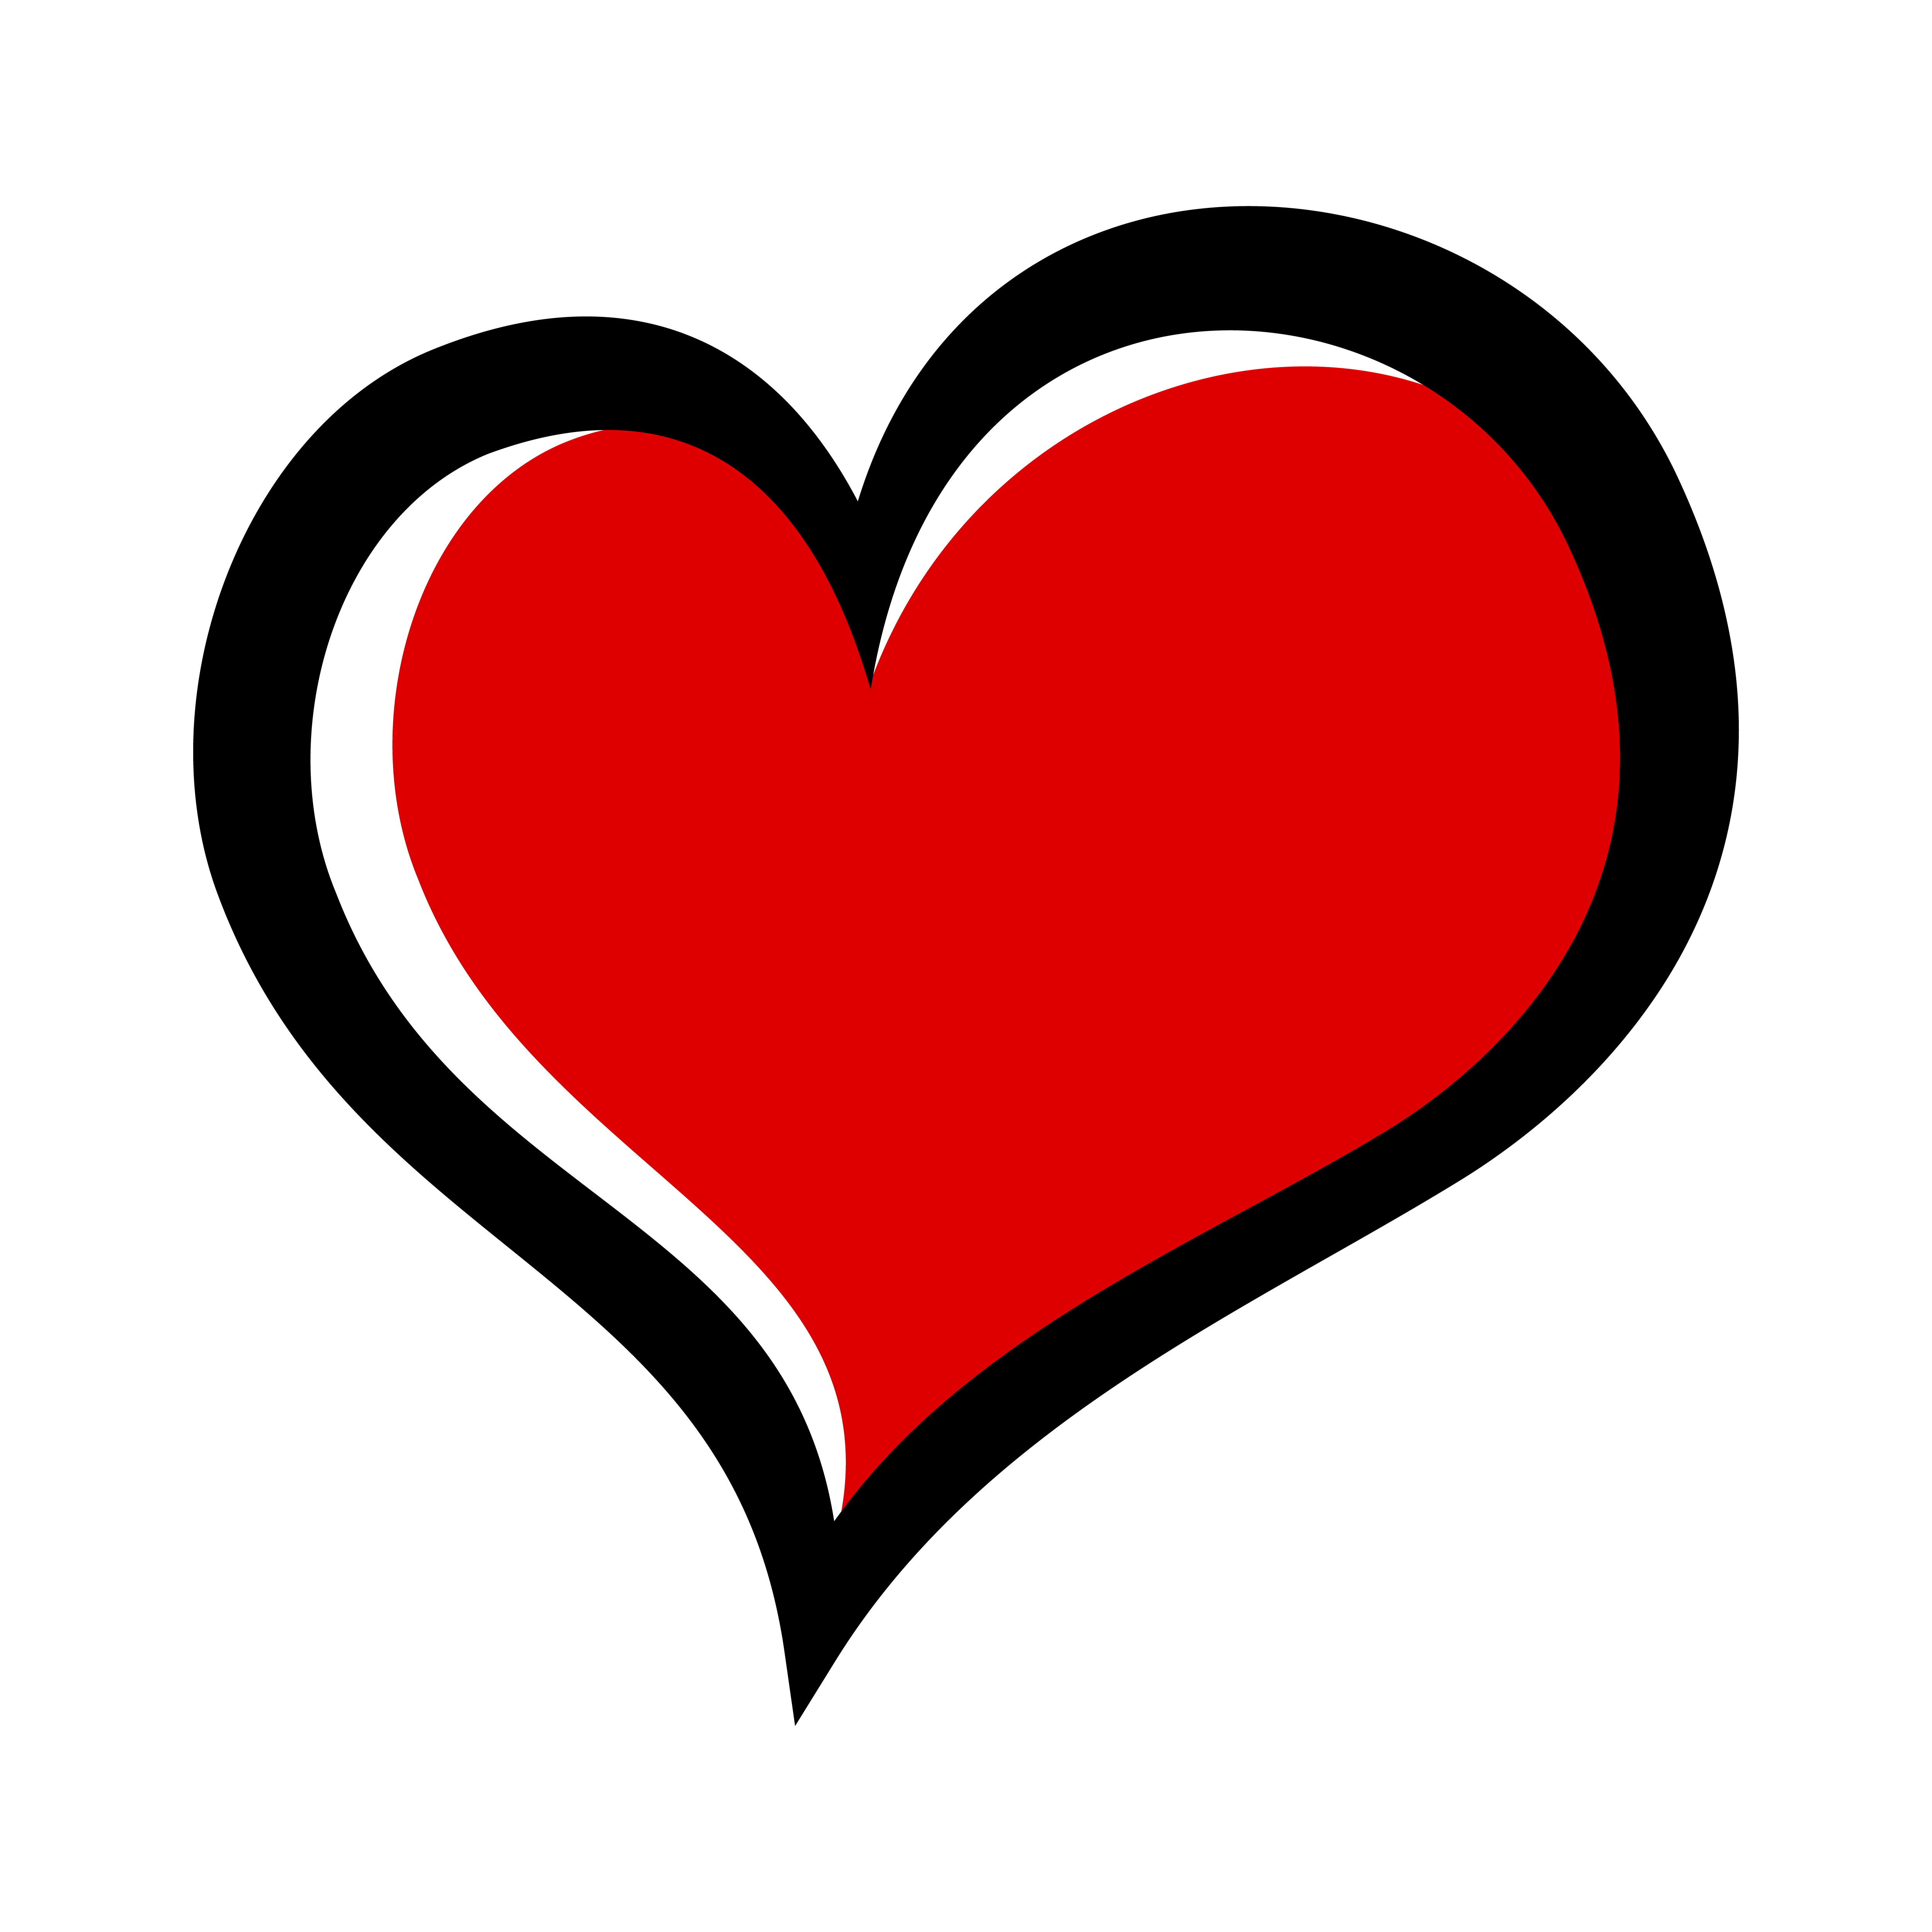 Xadrez Coração Amor - Gráfico vetorial grátis no Pixabay - Pixabay